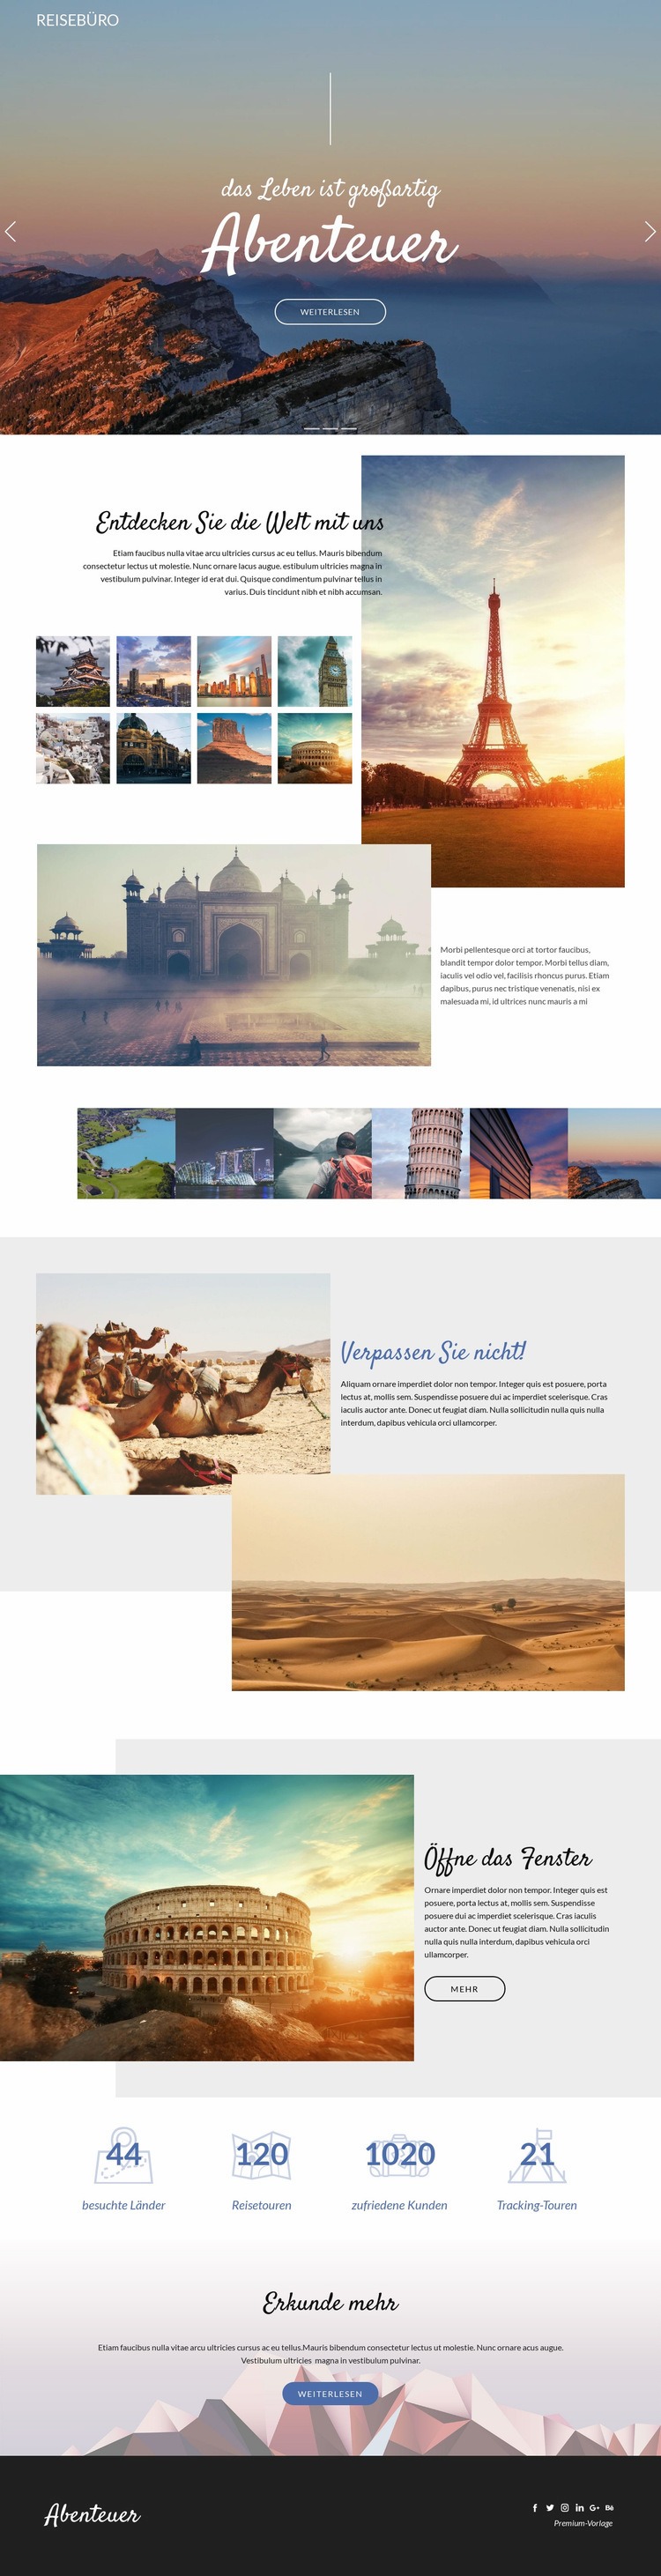 Abenteuer und Reisen Website-Modell